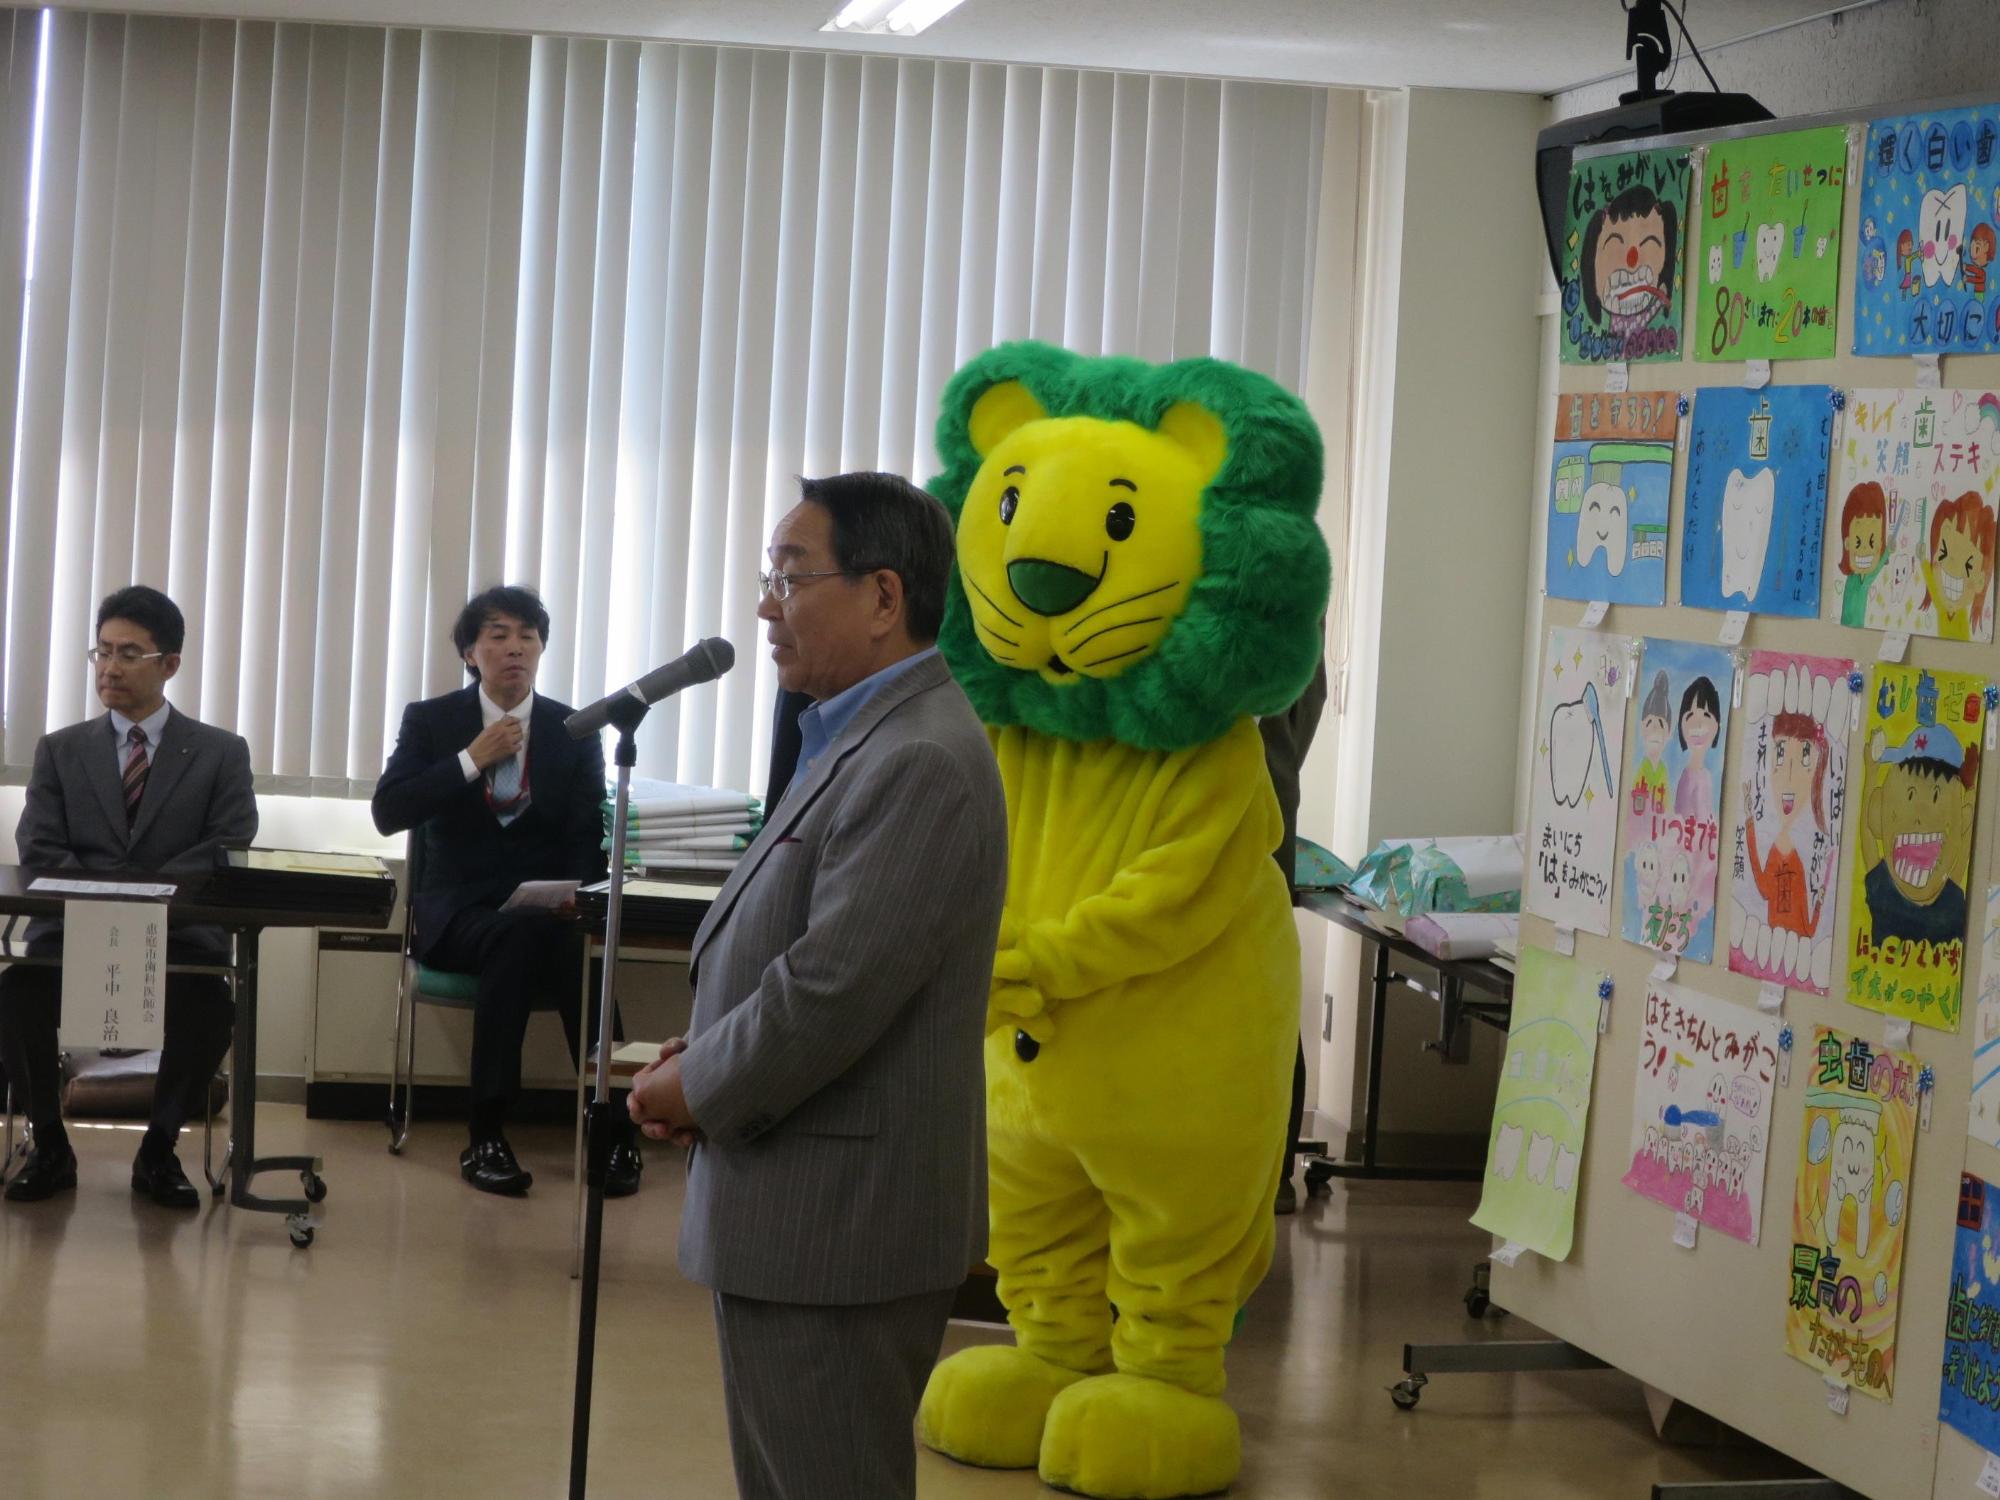 会場で挨拶をする原田市長とマスコットキャラクターのライオンくんの写真